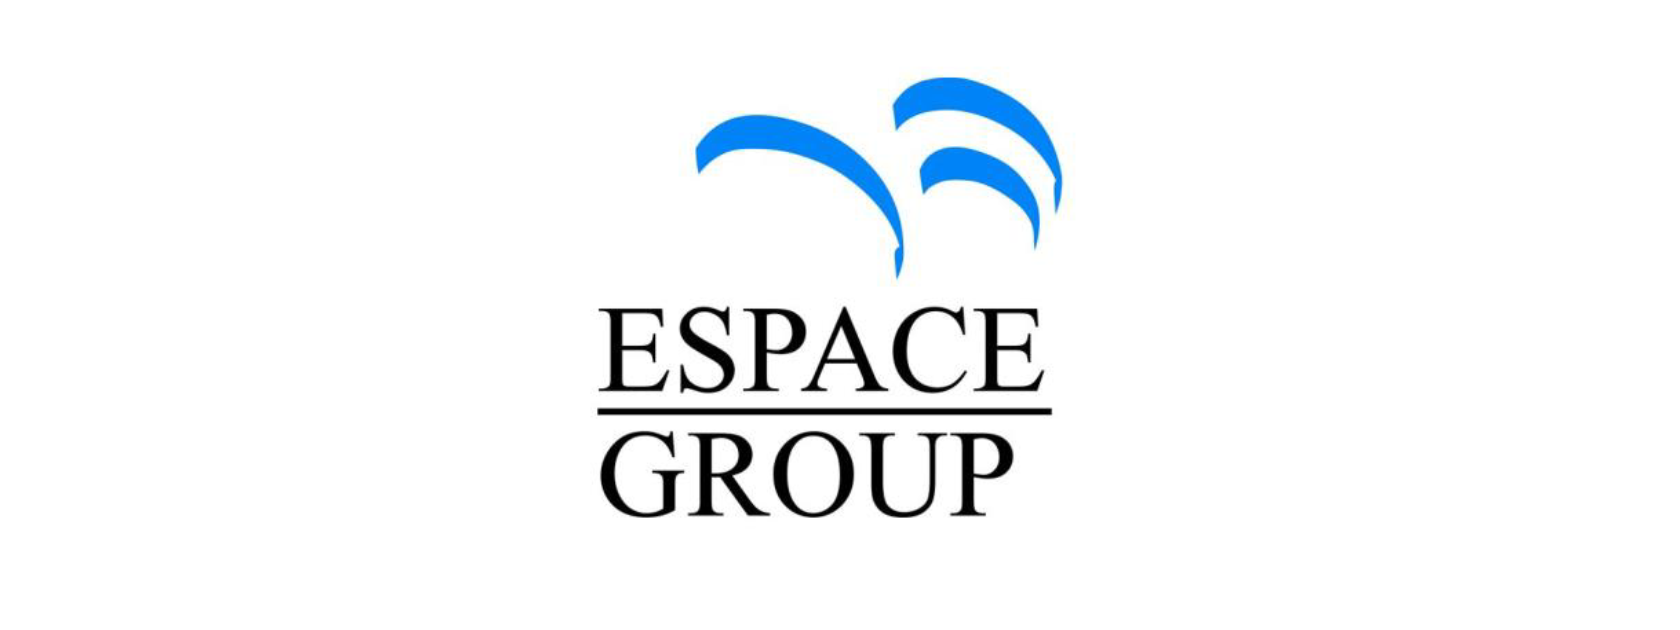 Espace Group : plus de 10 millions d’écoutes actives en mars